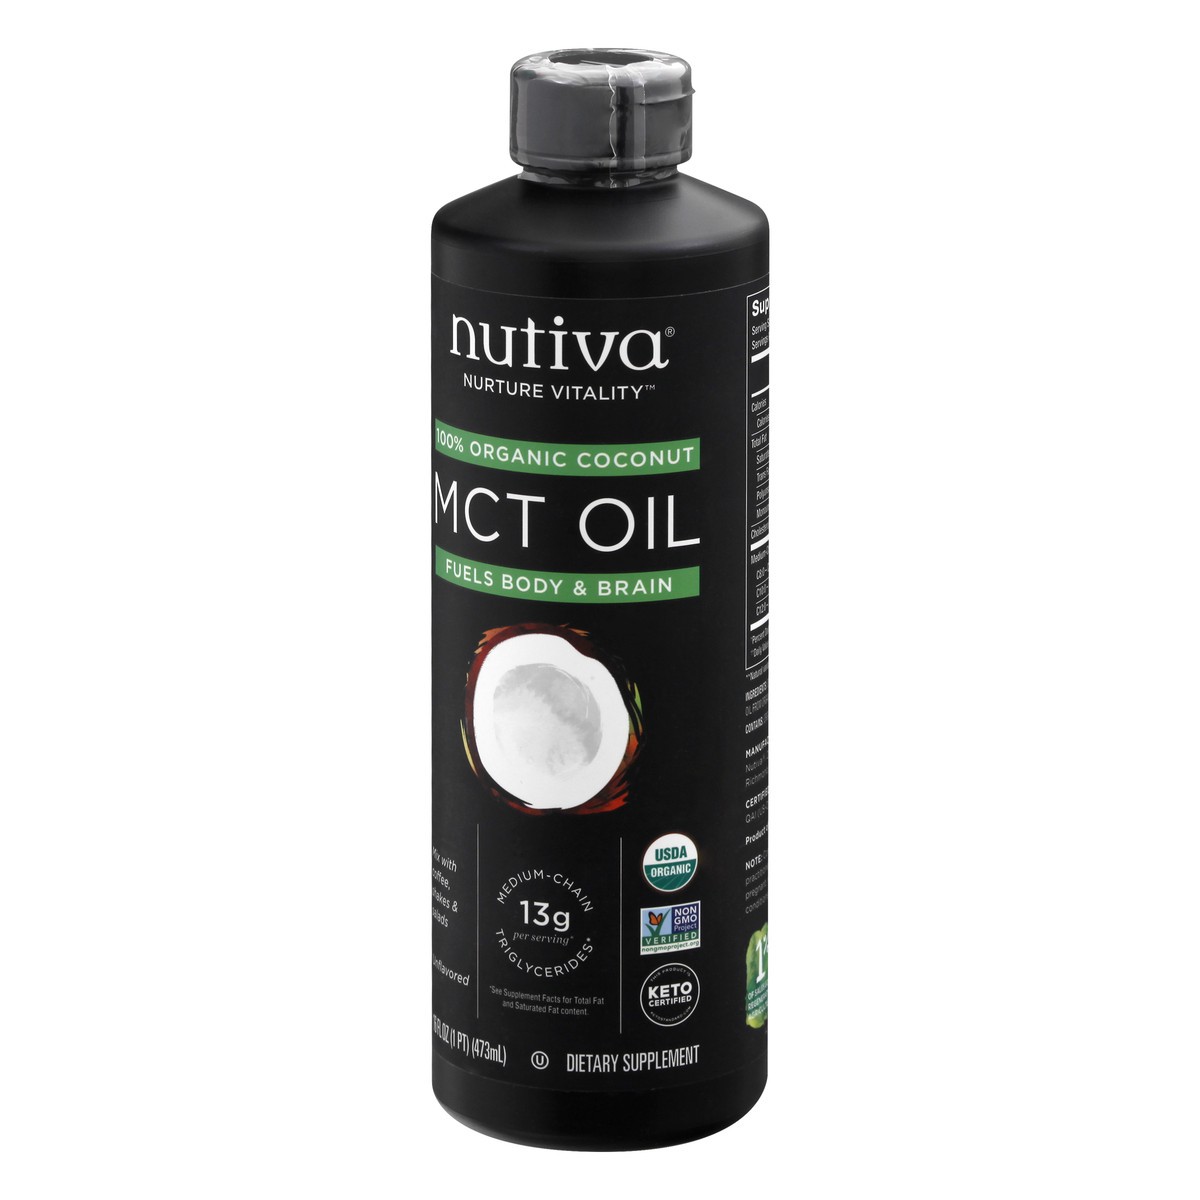 slide 2 of 8, Nutiva Nurture Vitality 100% Organic Coconut MCT Oil 16 oz, 16 oz